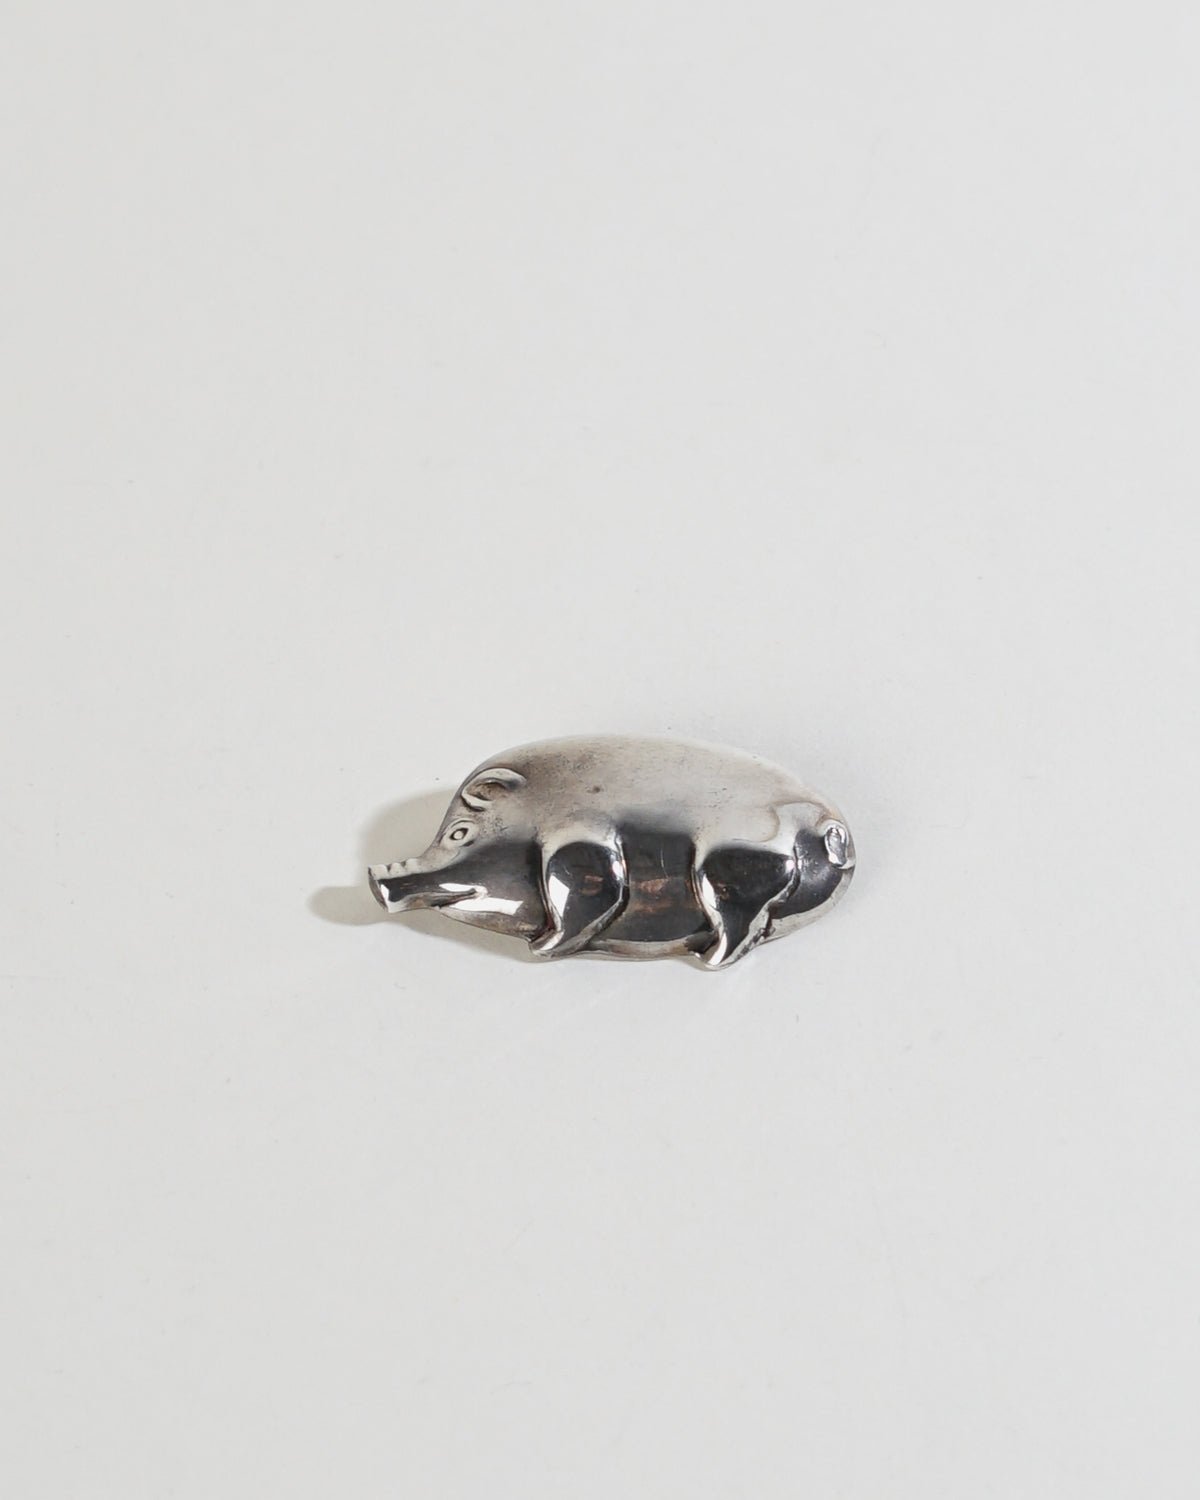 Silver Pig Brooch / Pin